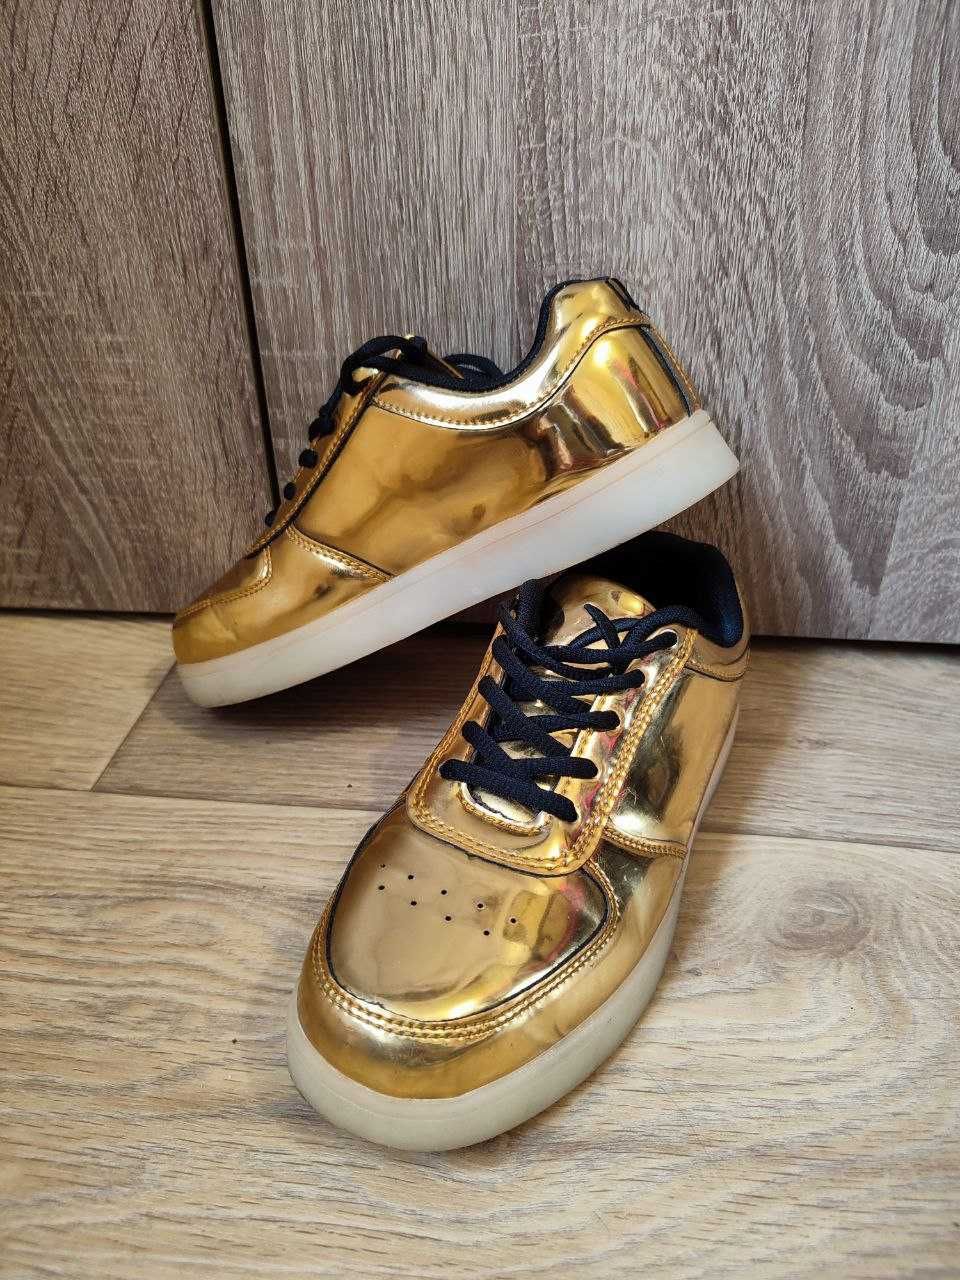 Кроссовки стильные золотые, от французского бренда, размер 36